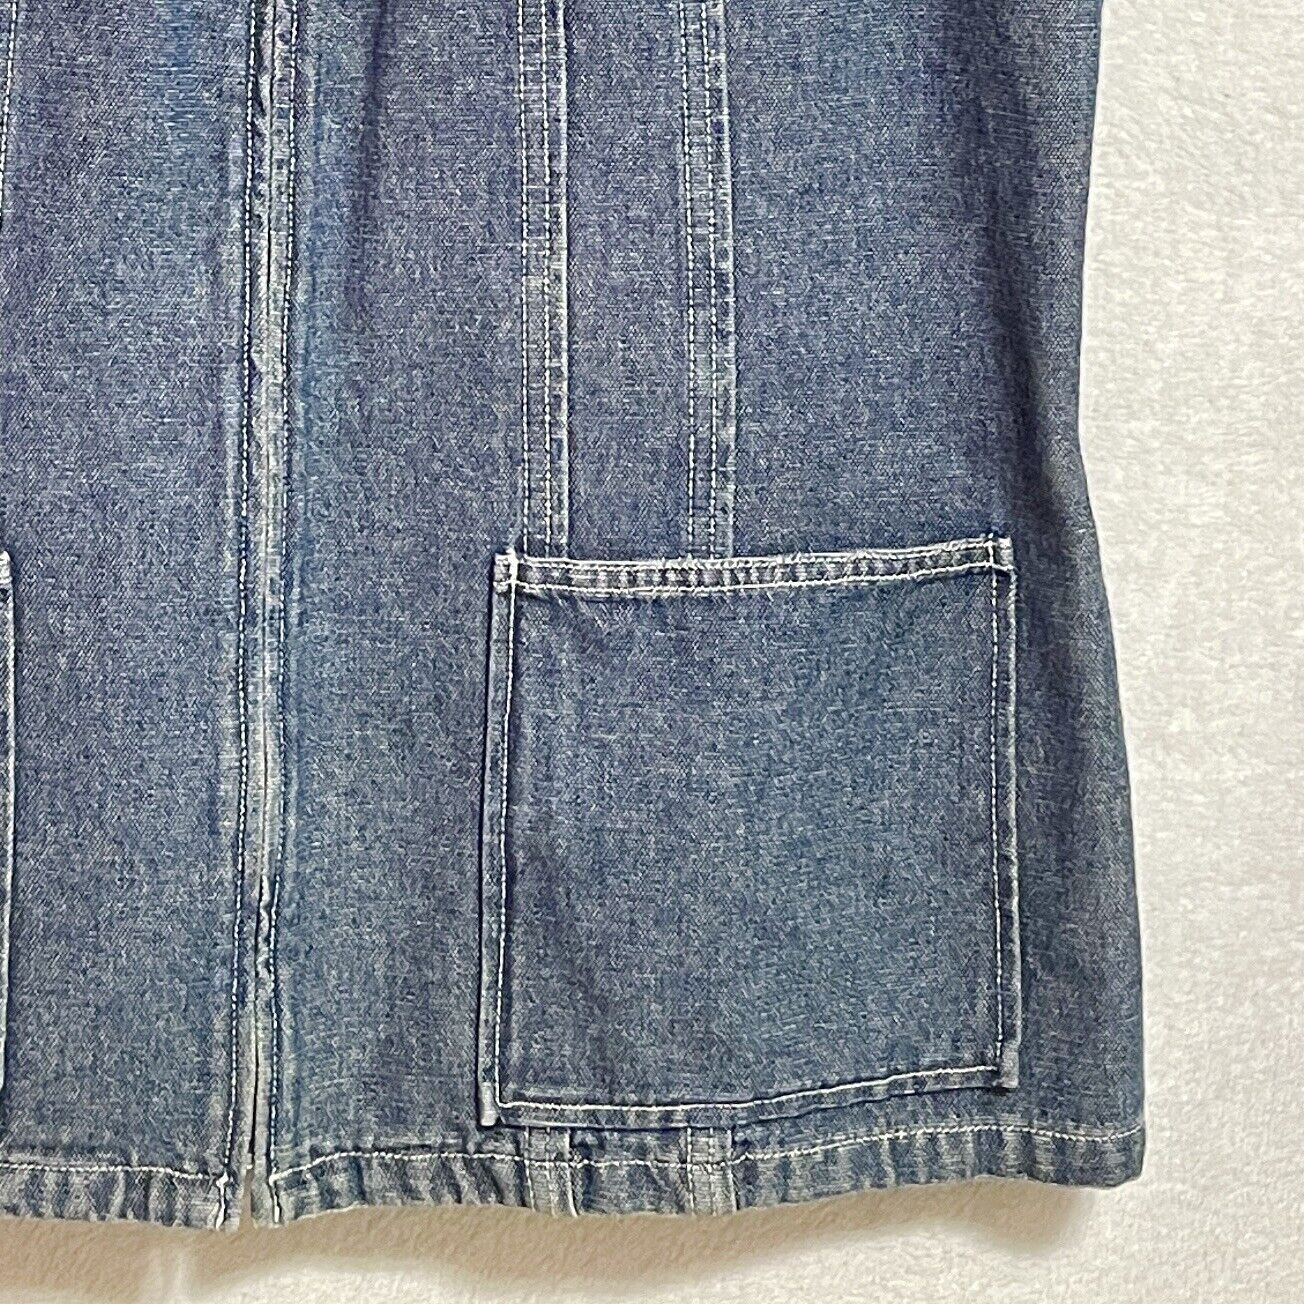 Ellen Tracy Womens Sz 16 Denim Zip Field Vest Jean Jacket Pockets Vintage